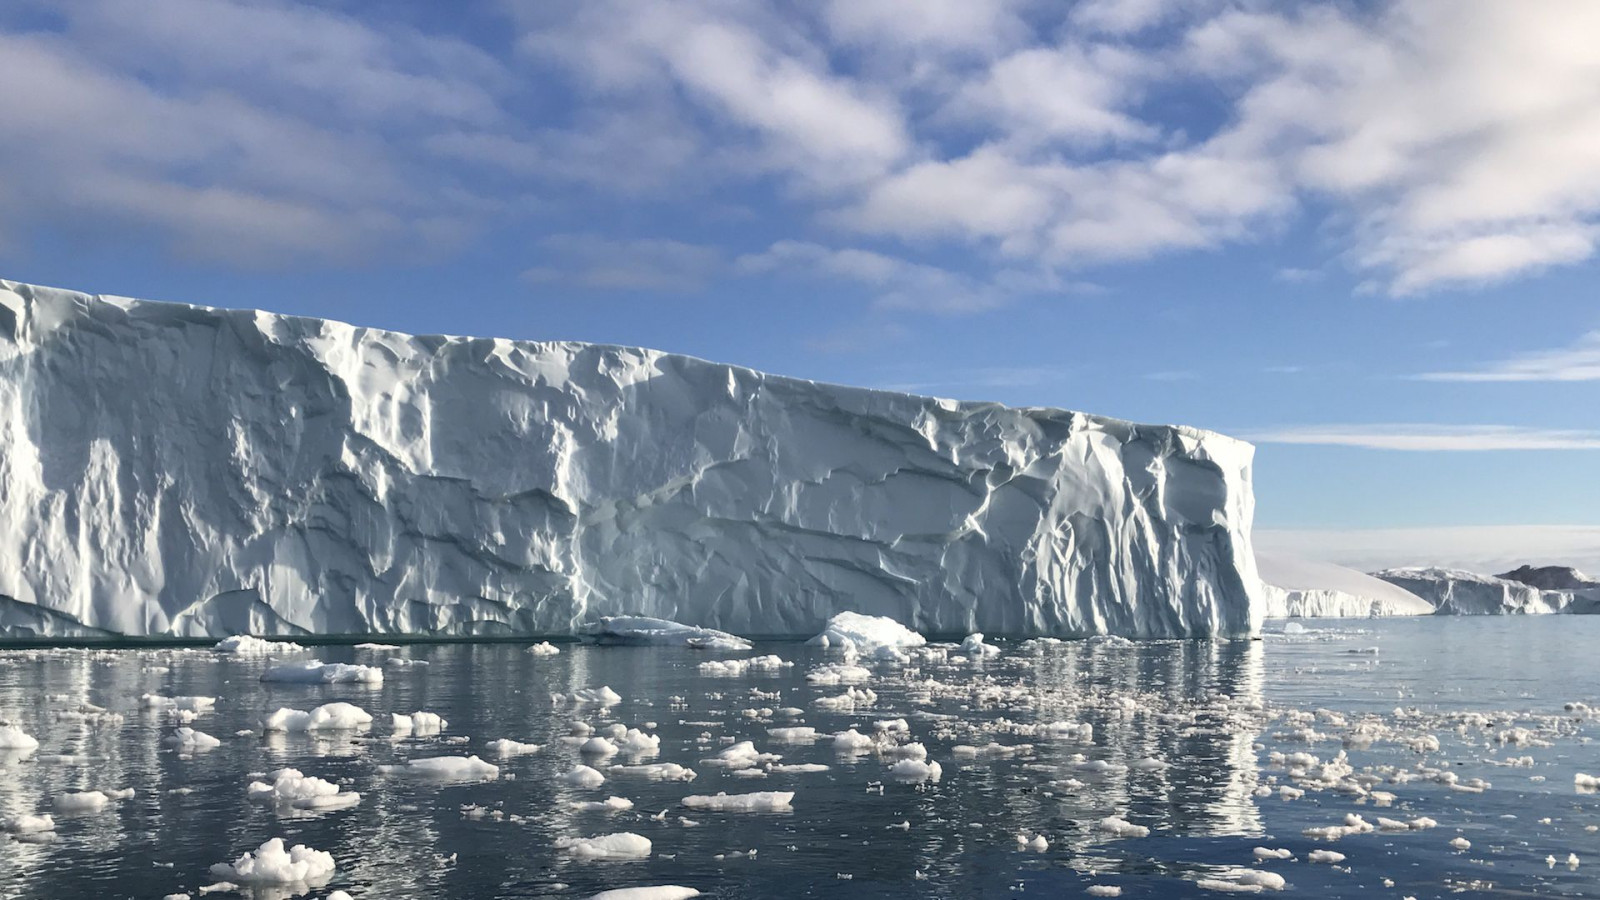 Bắc Cực đang chịu ảnh hưởng nghiêm trọng từ biến đổi khí hậu